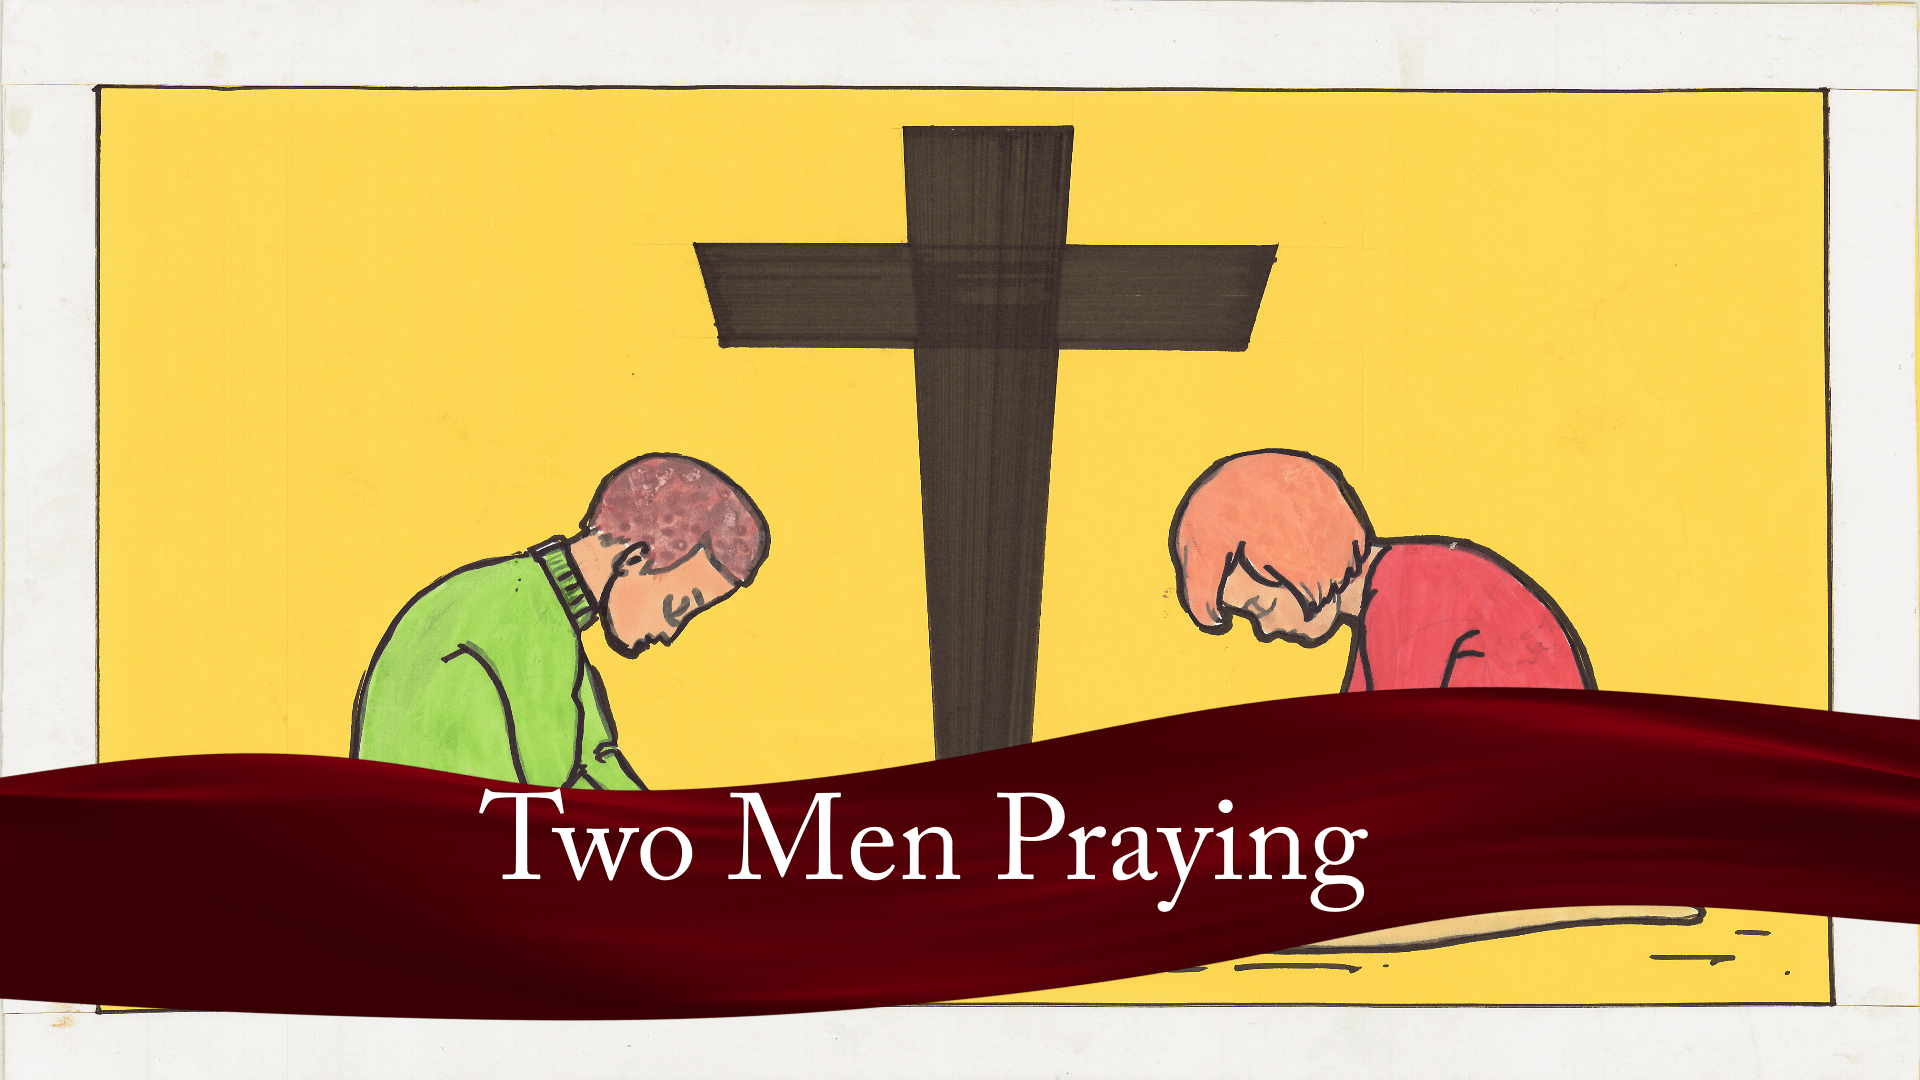 Two Men Praying